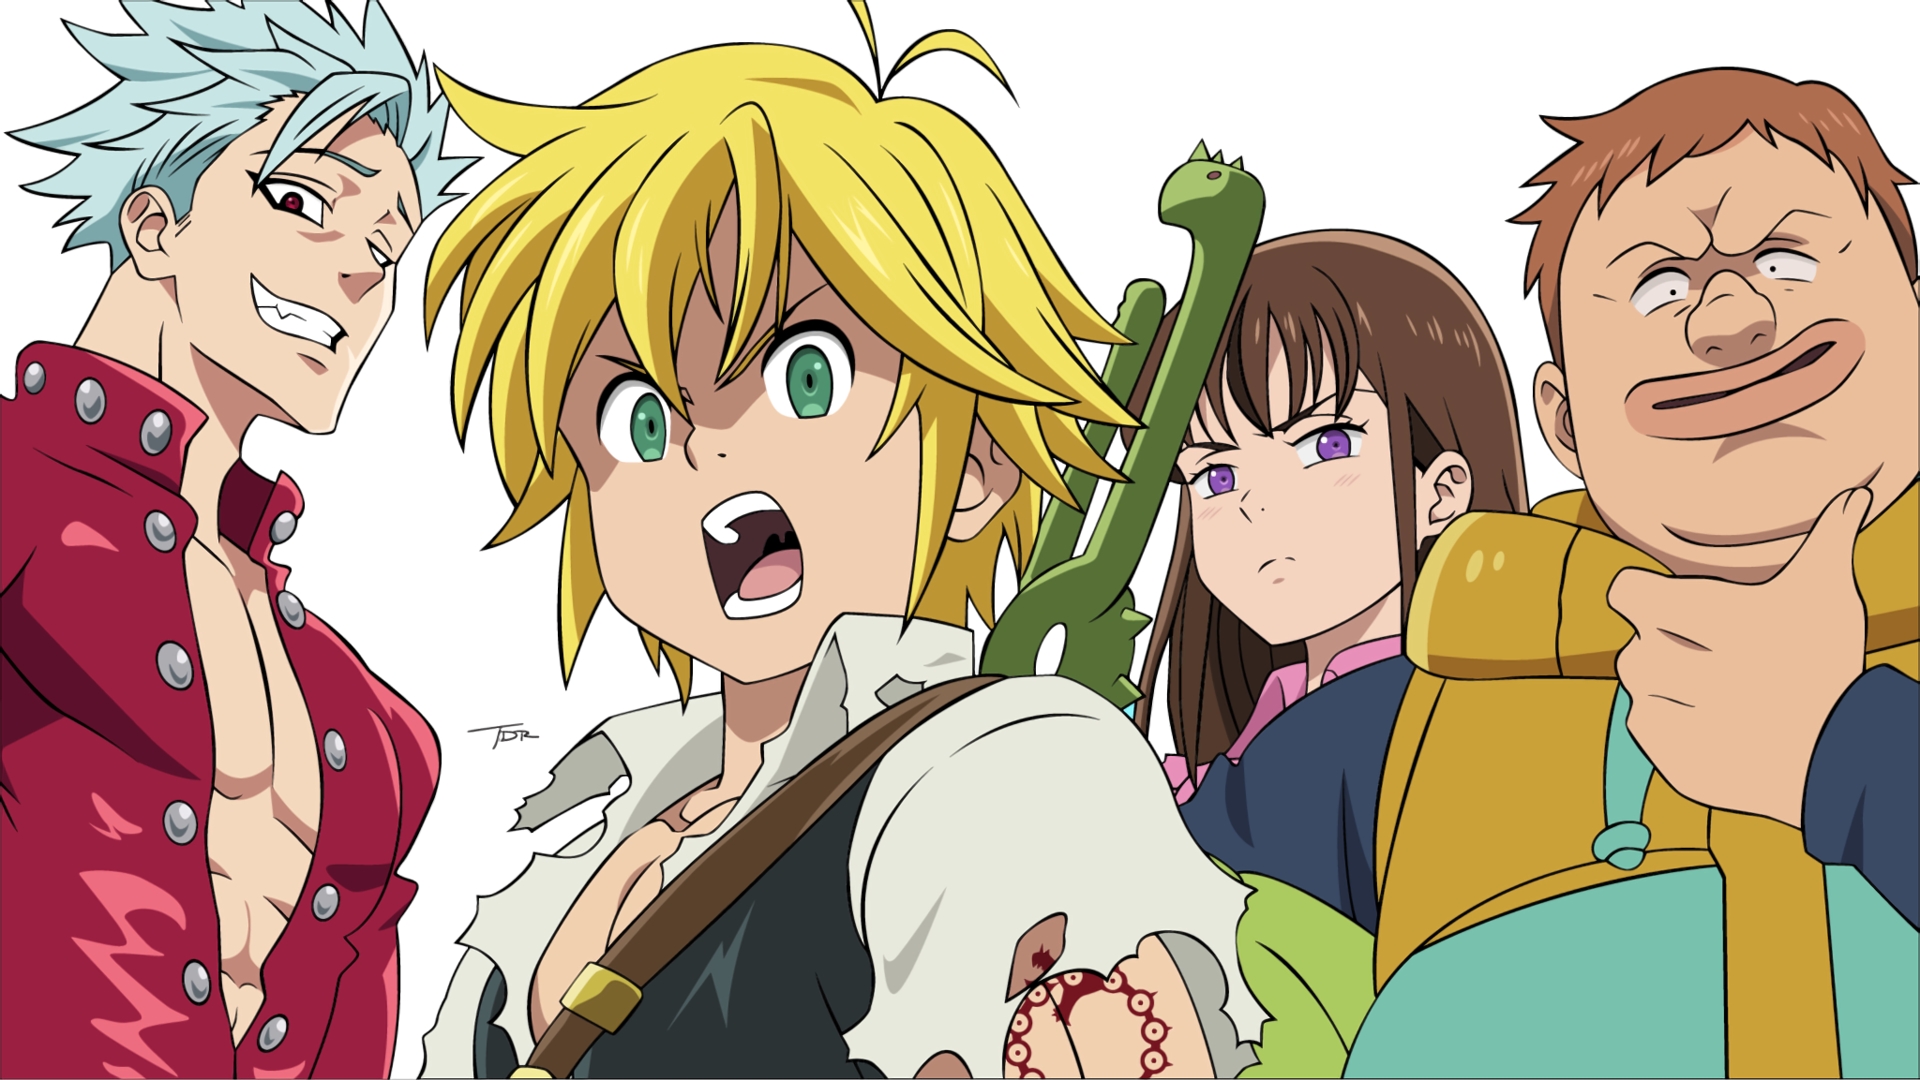 Personajes de Los siete pecados capitales Anime Fondo de pantalla Full HD  ID:4022